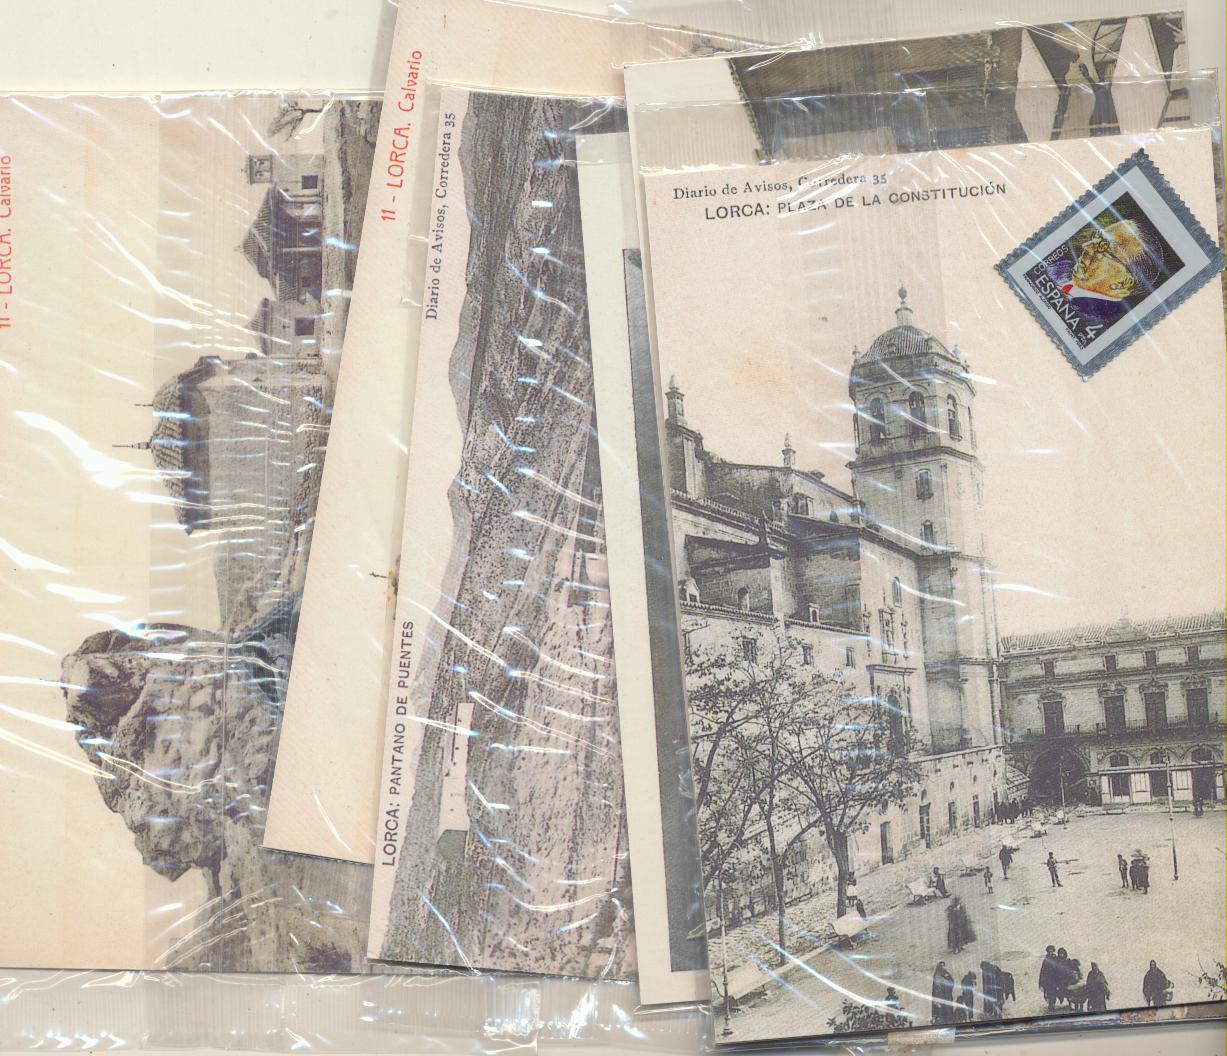 Lorca. Lote de 7 postales con el sello metálico, en su envoltura original. Edición de La Opinión, año 2000